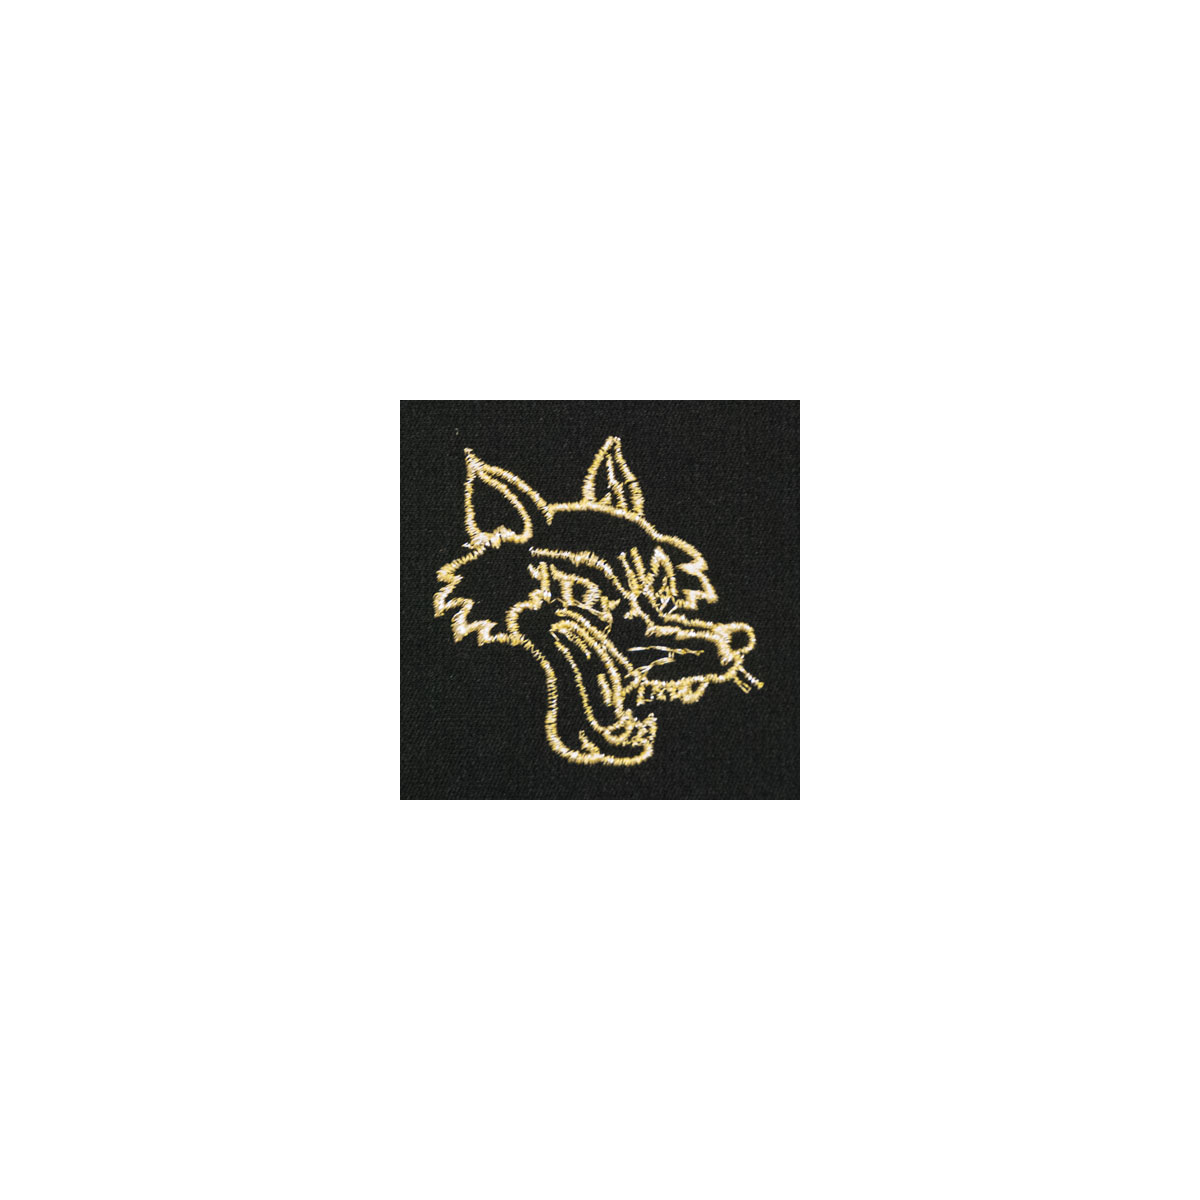 Wolf/Coyote Monogram Mascot (MM118)